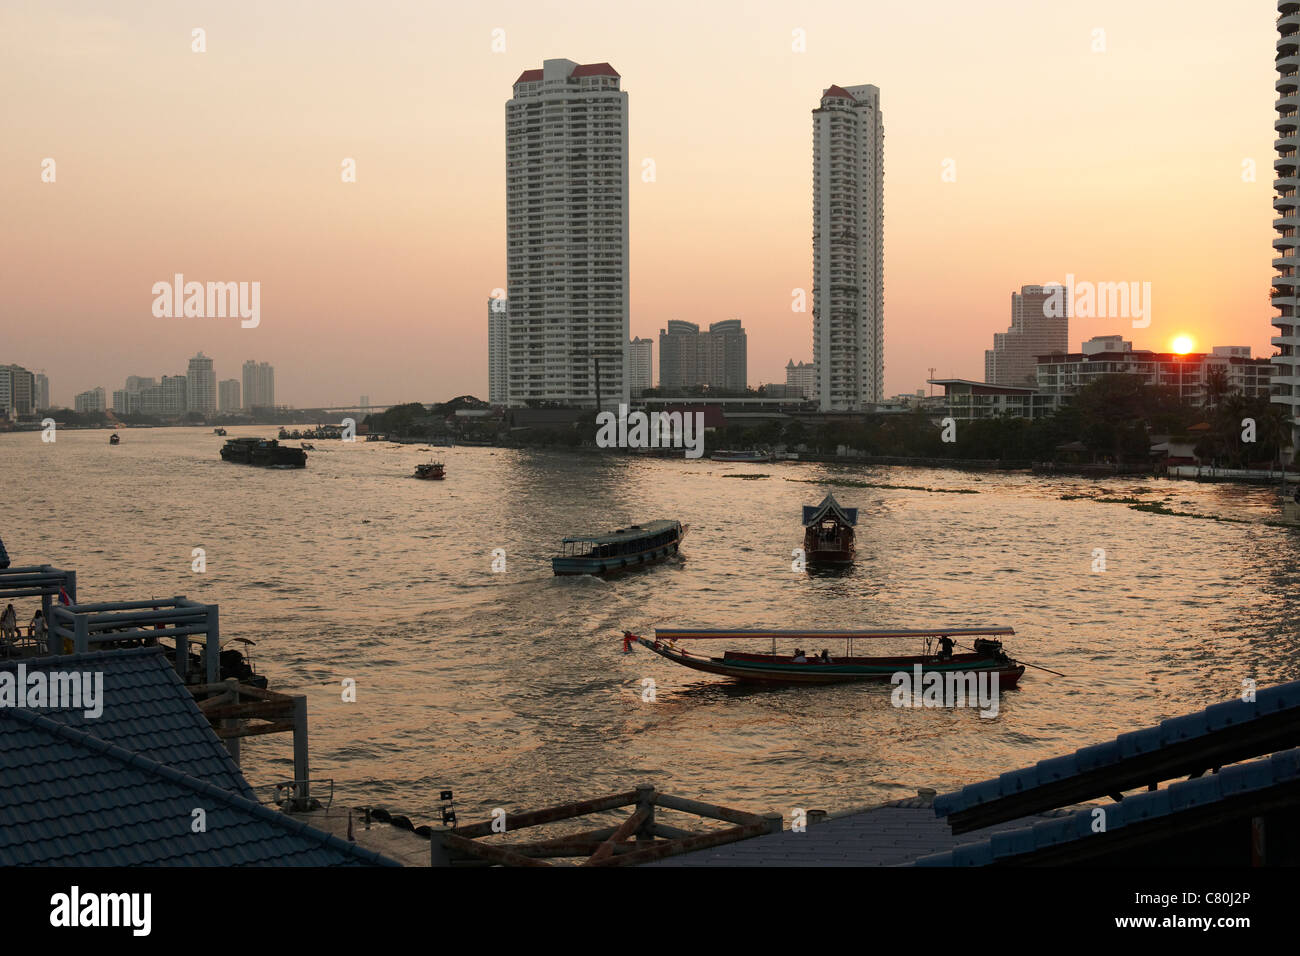 Thailand, Bangkok, Chao Praya River at dusk Stock Photo